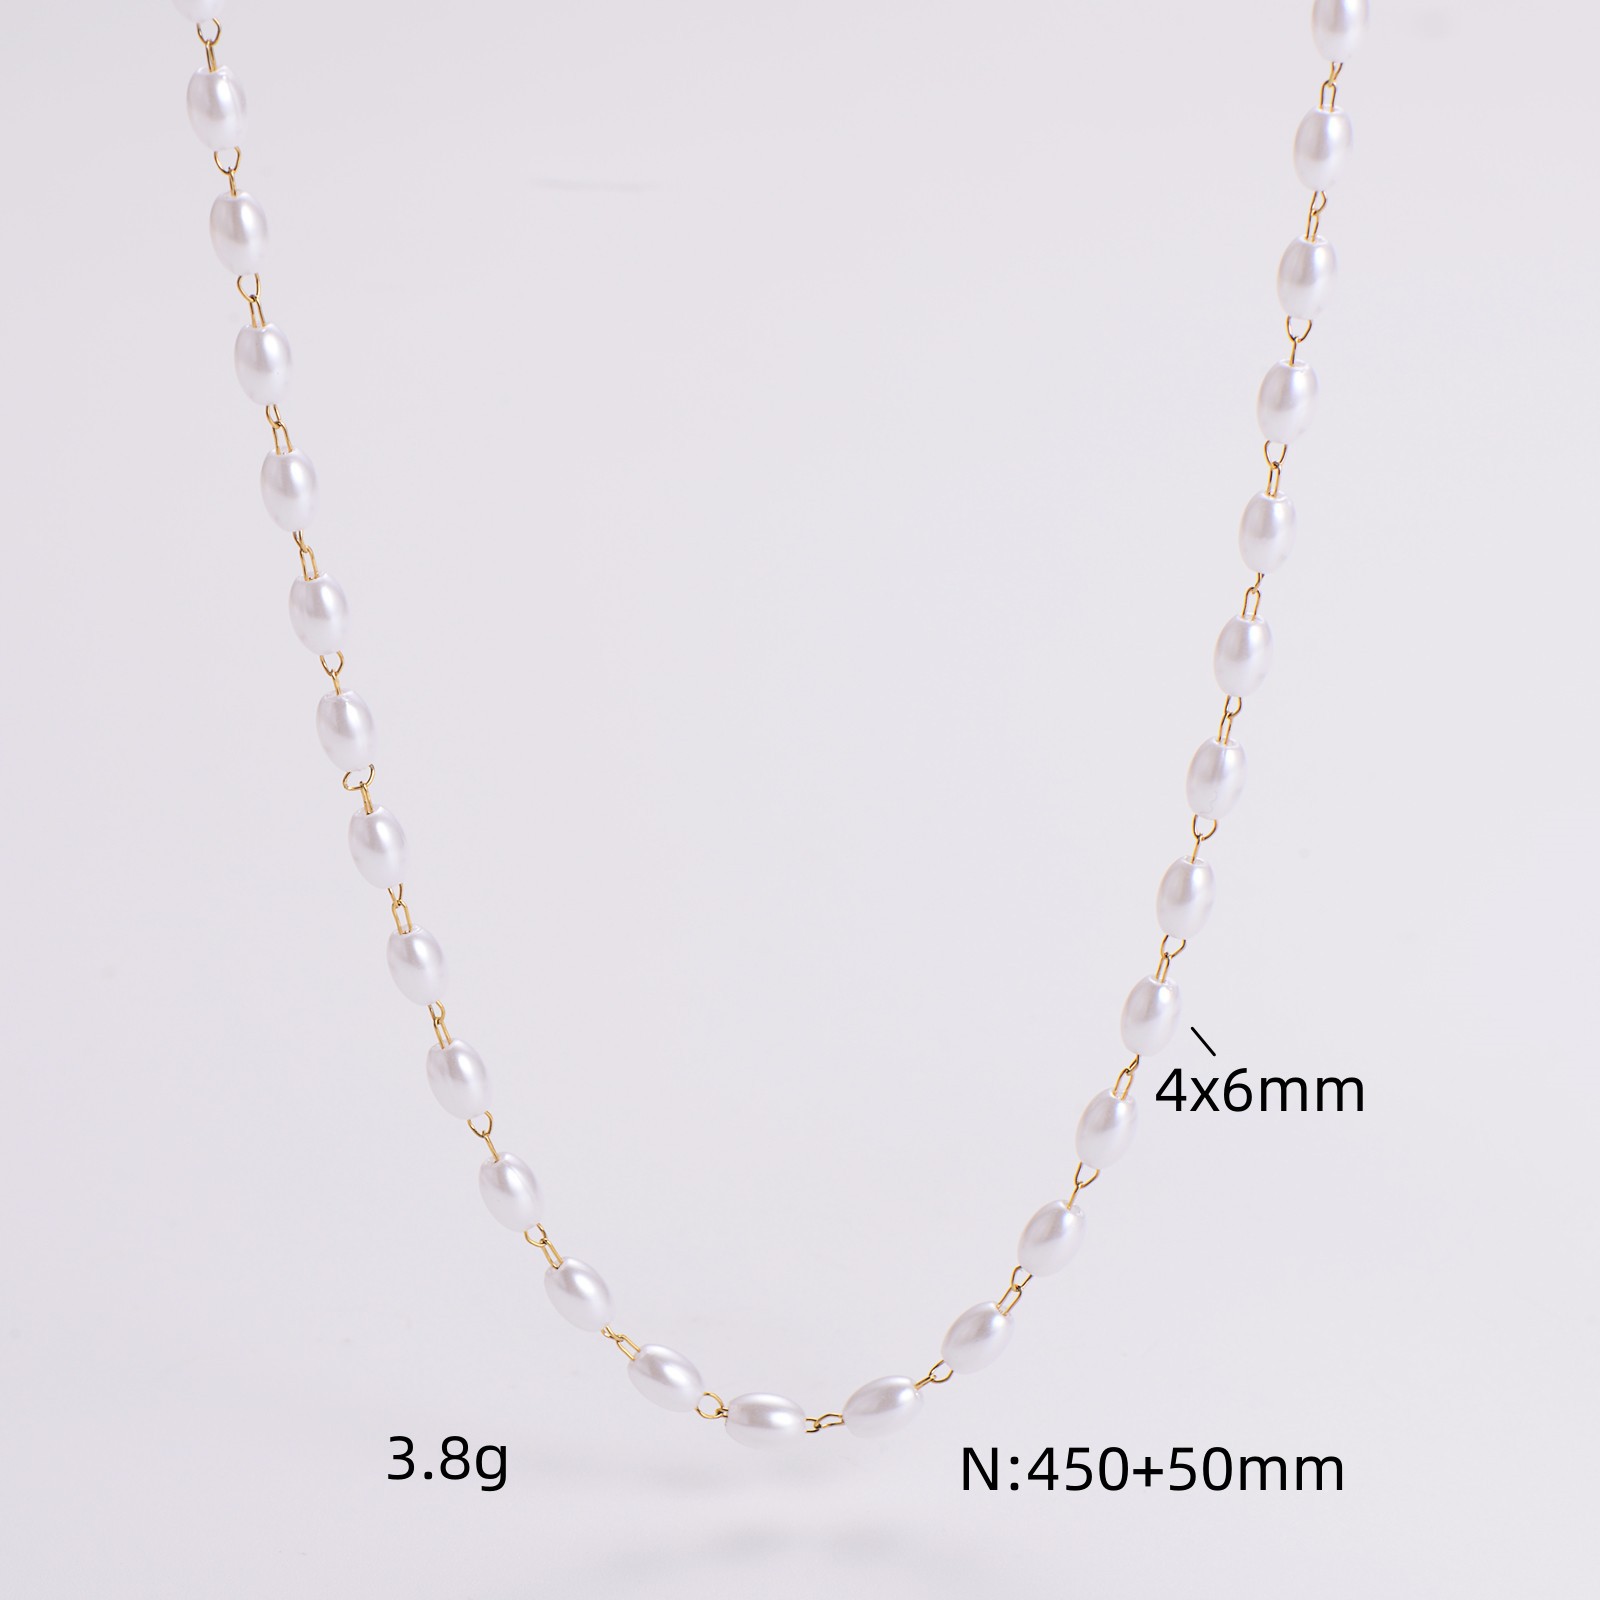 4x6mm necklace 45cm 5cm